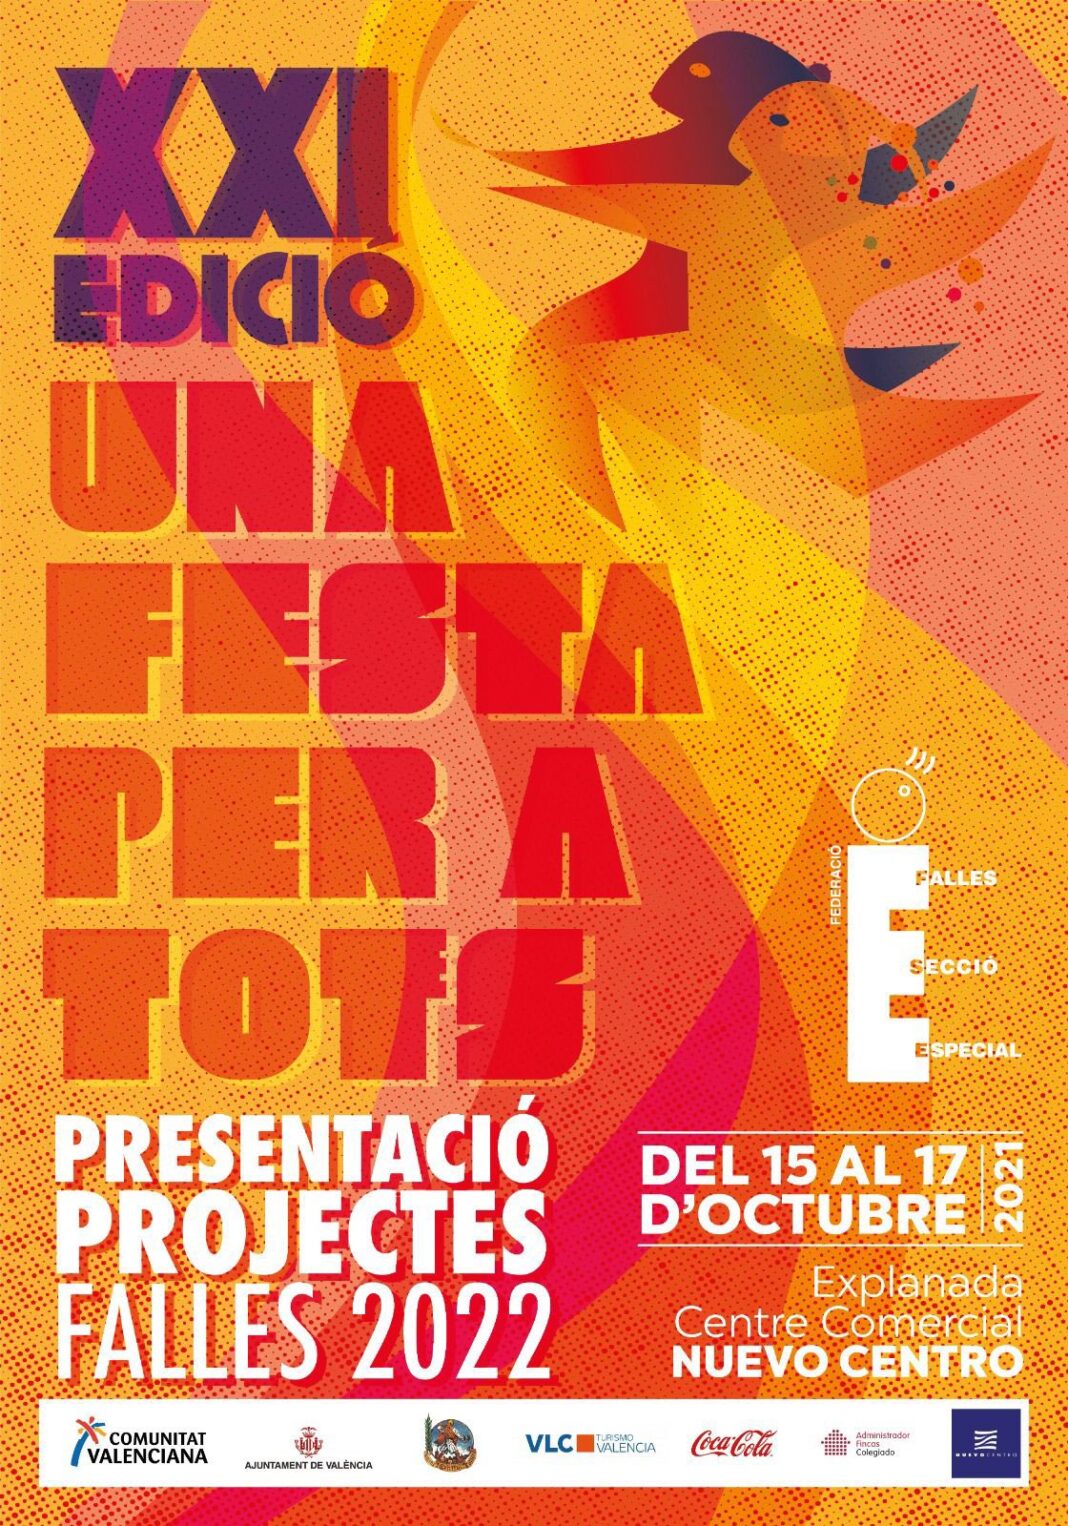 La Federacio de Falles d'Especial presenta sus proyectos 2022 en una nueva edición de Una Festa per a Tots